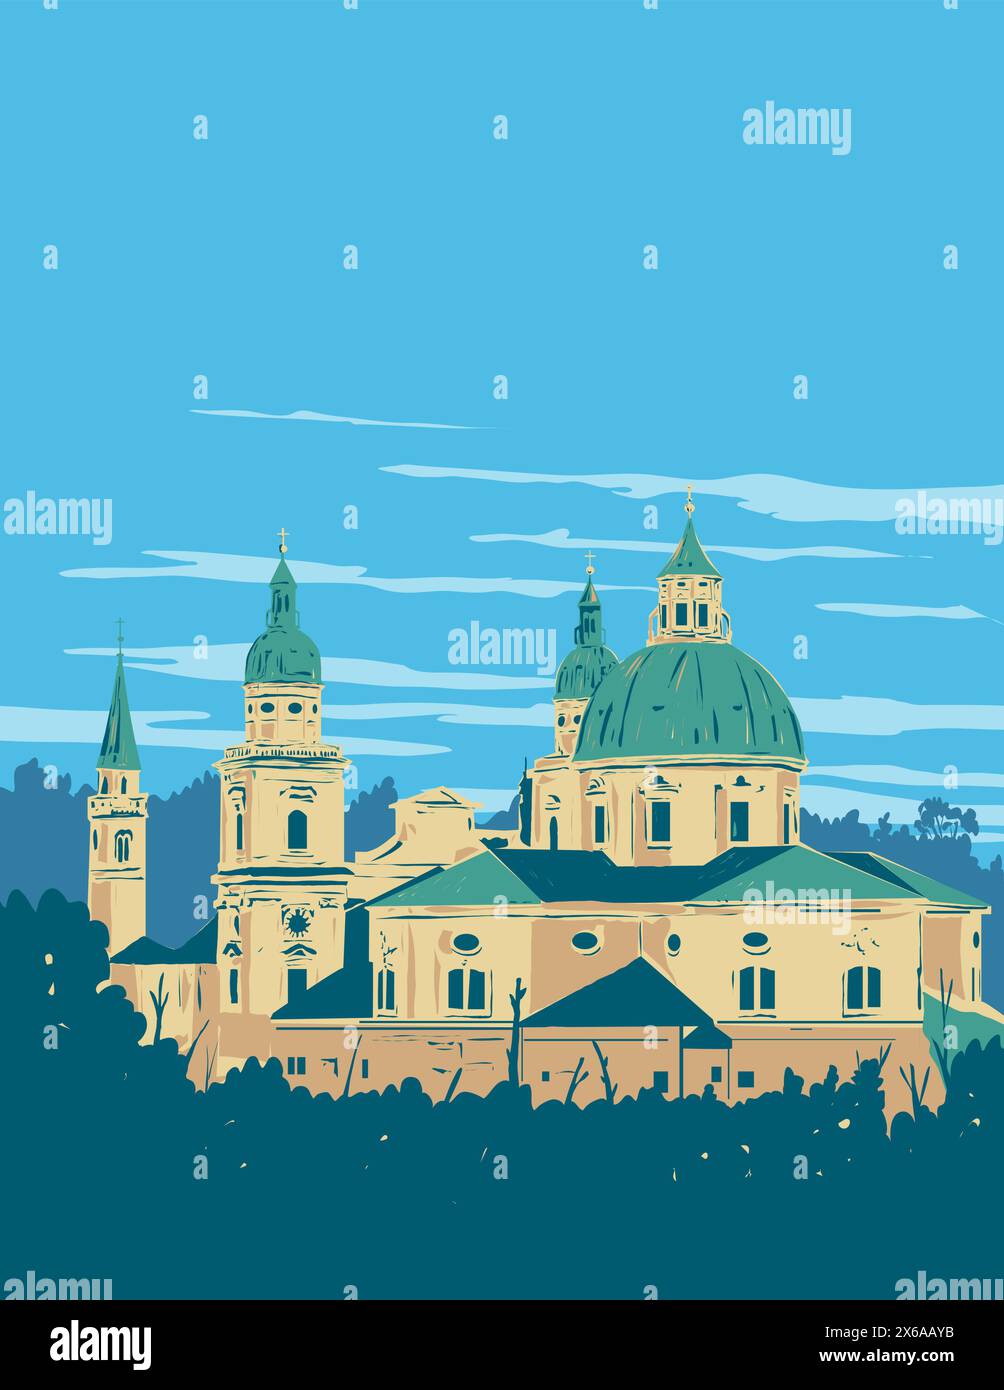 WPA poster art della Cattedrale di Salisburgo o della Cattedrale dei Santi Roberto e Vergilio a Domplatz nella città vecchia di Salisburgo, Austria fatto in Illustrazione Vettoriale